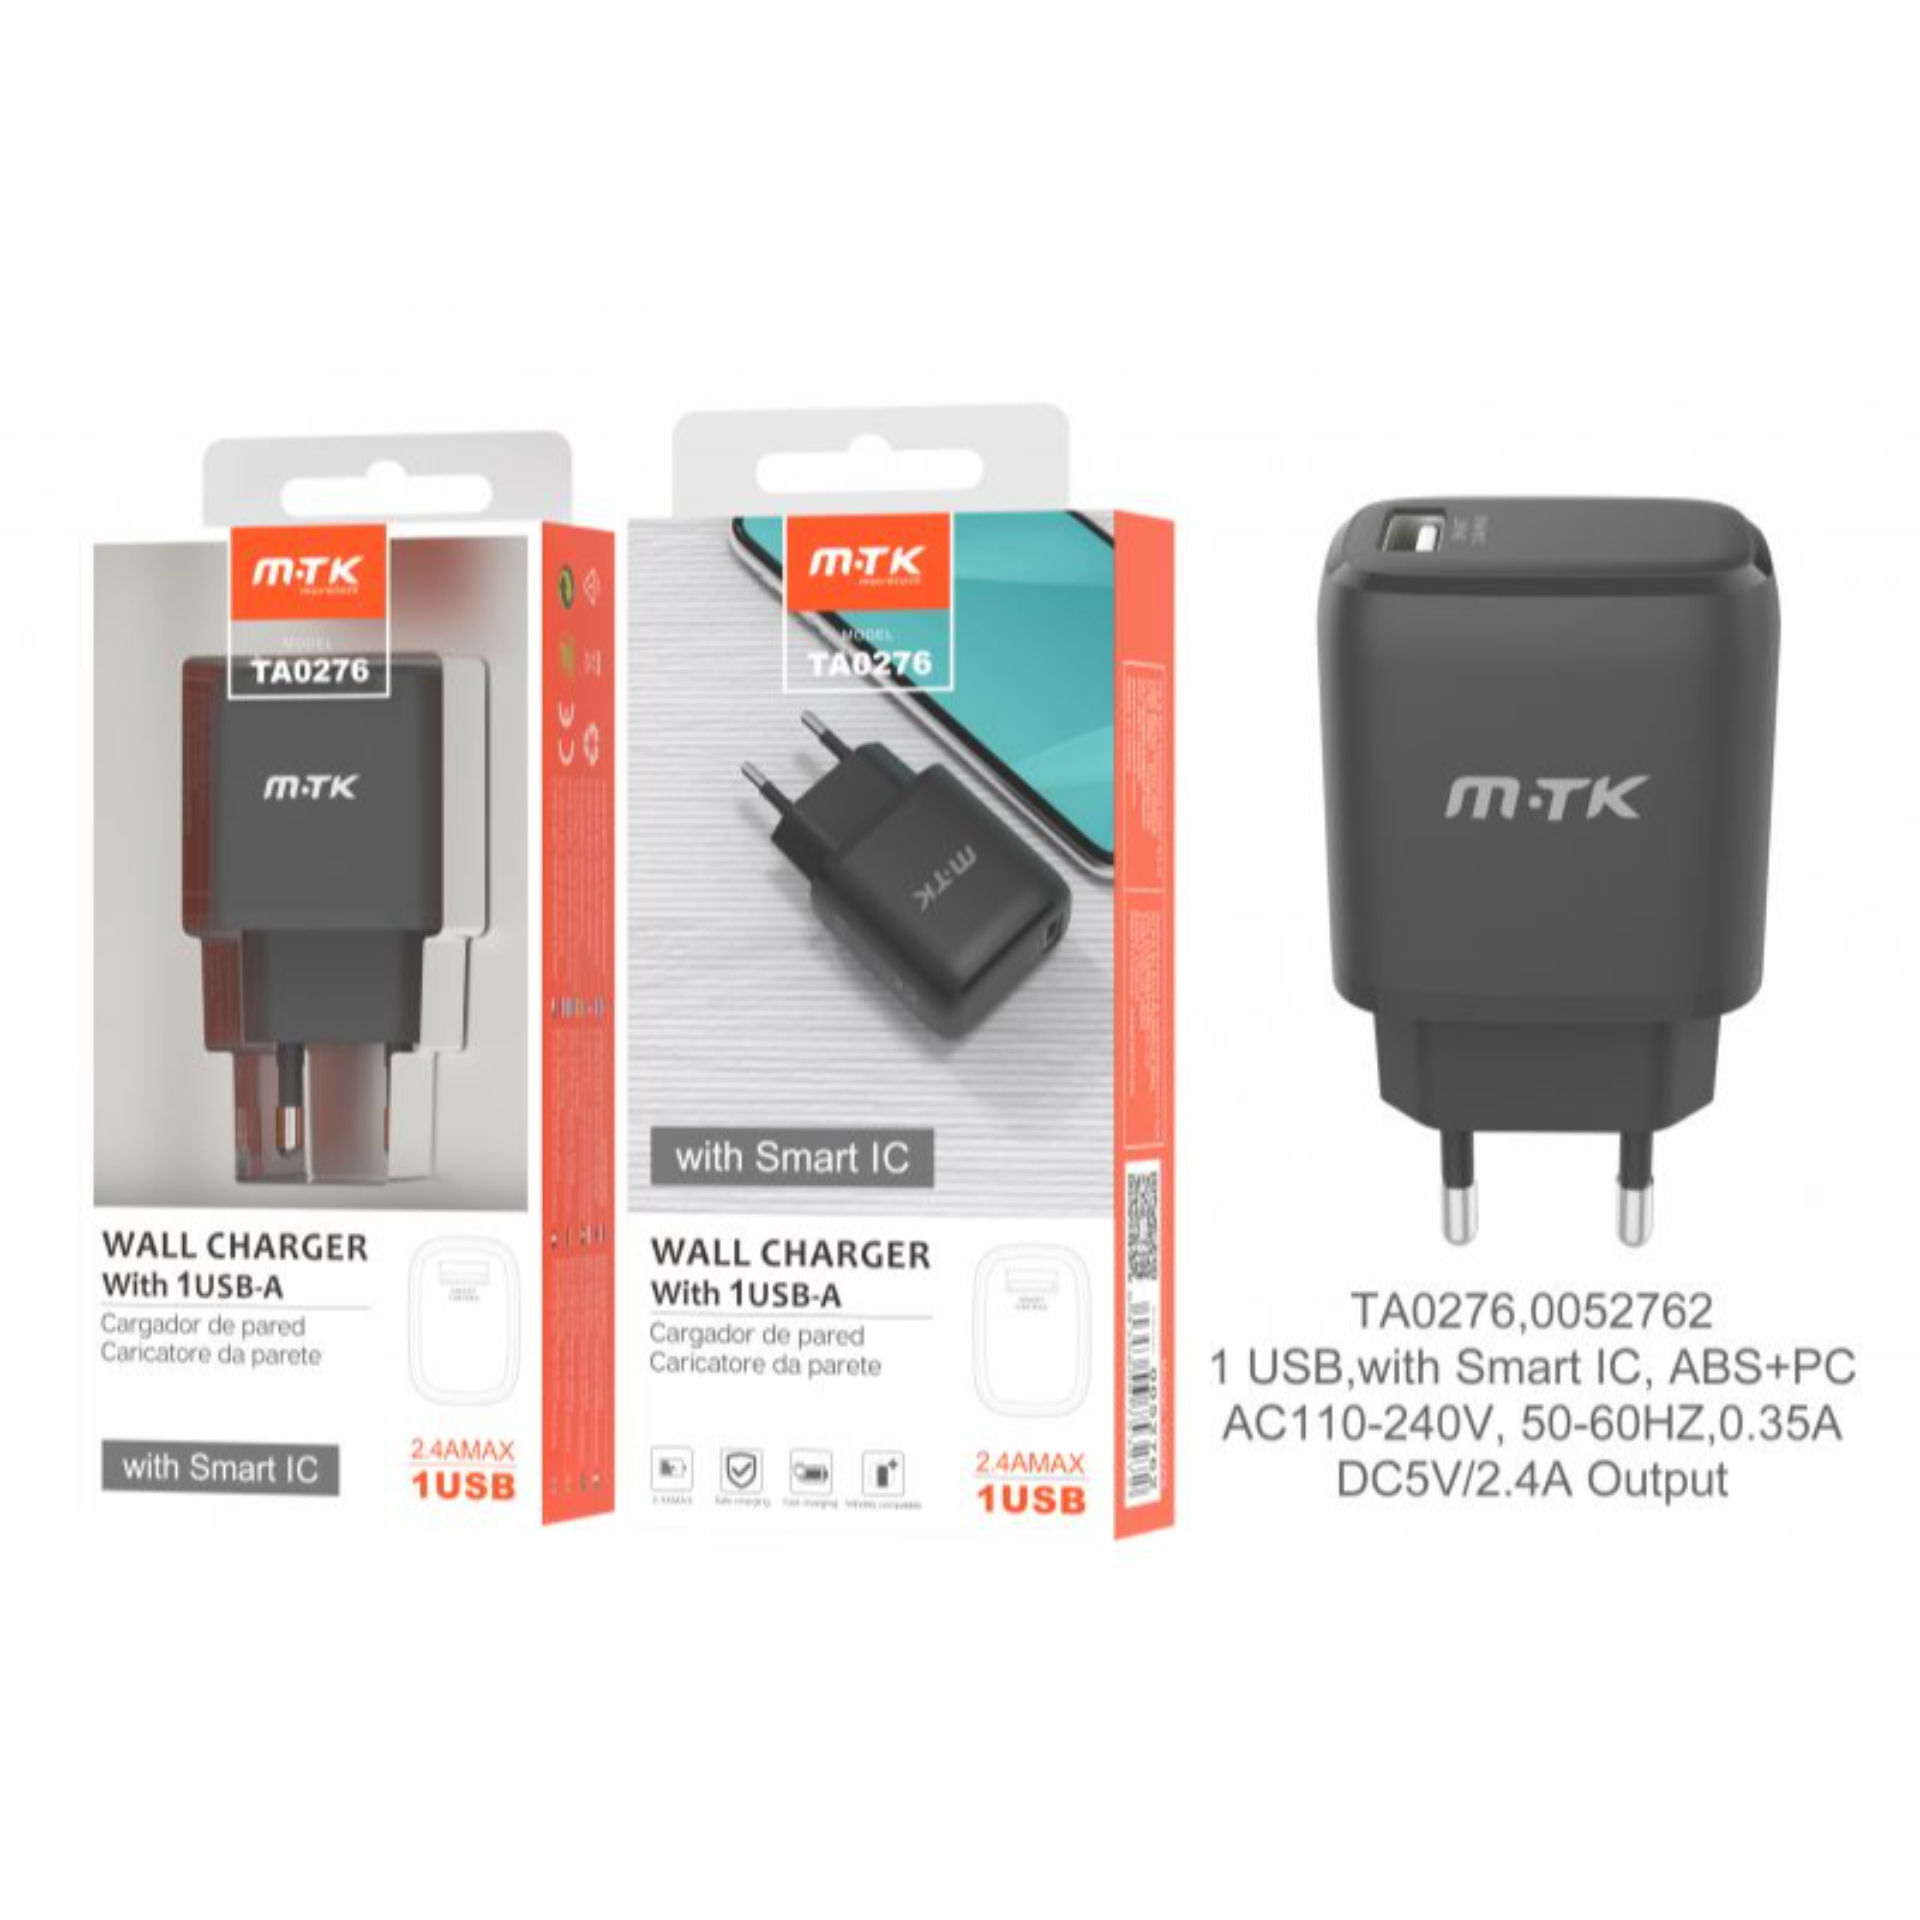 MTK CARICATORE USB A MURO CON USB 2.4A, NEROMTK